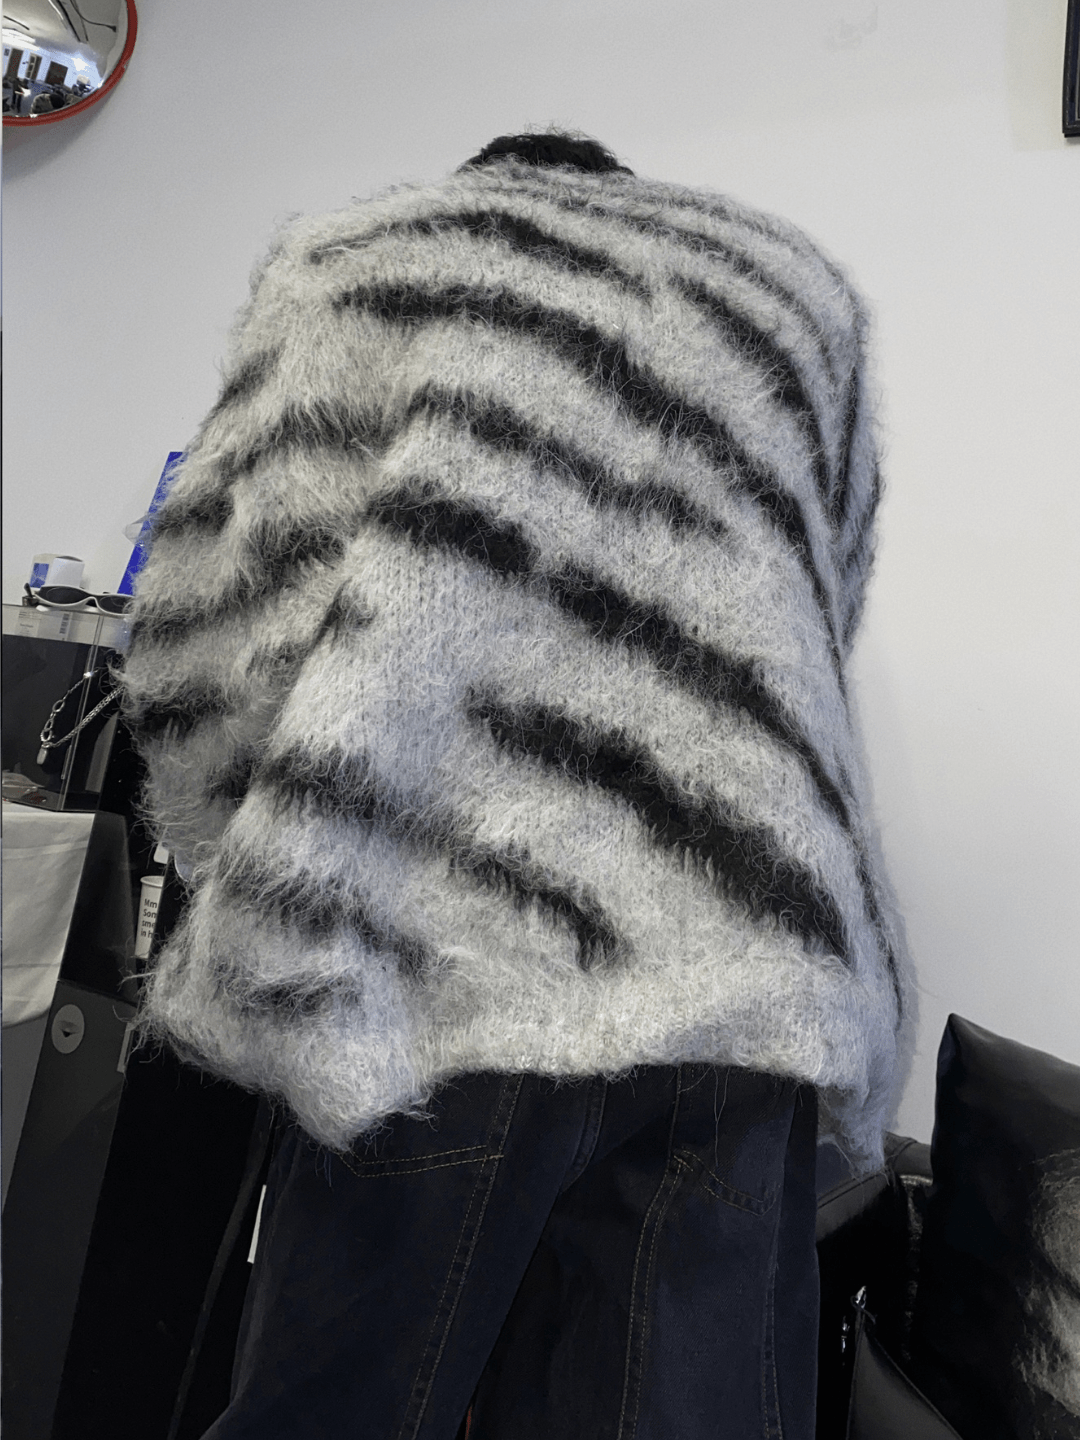 [CulturE] Zebra Print Crew Neck Sweater na839 